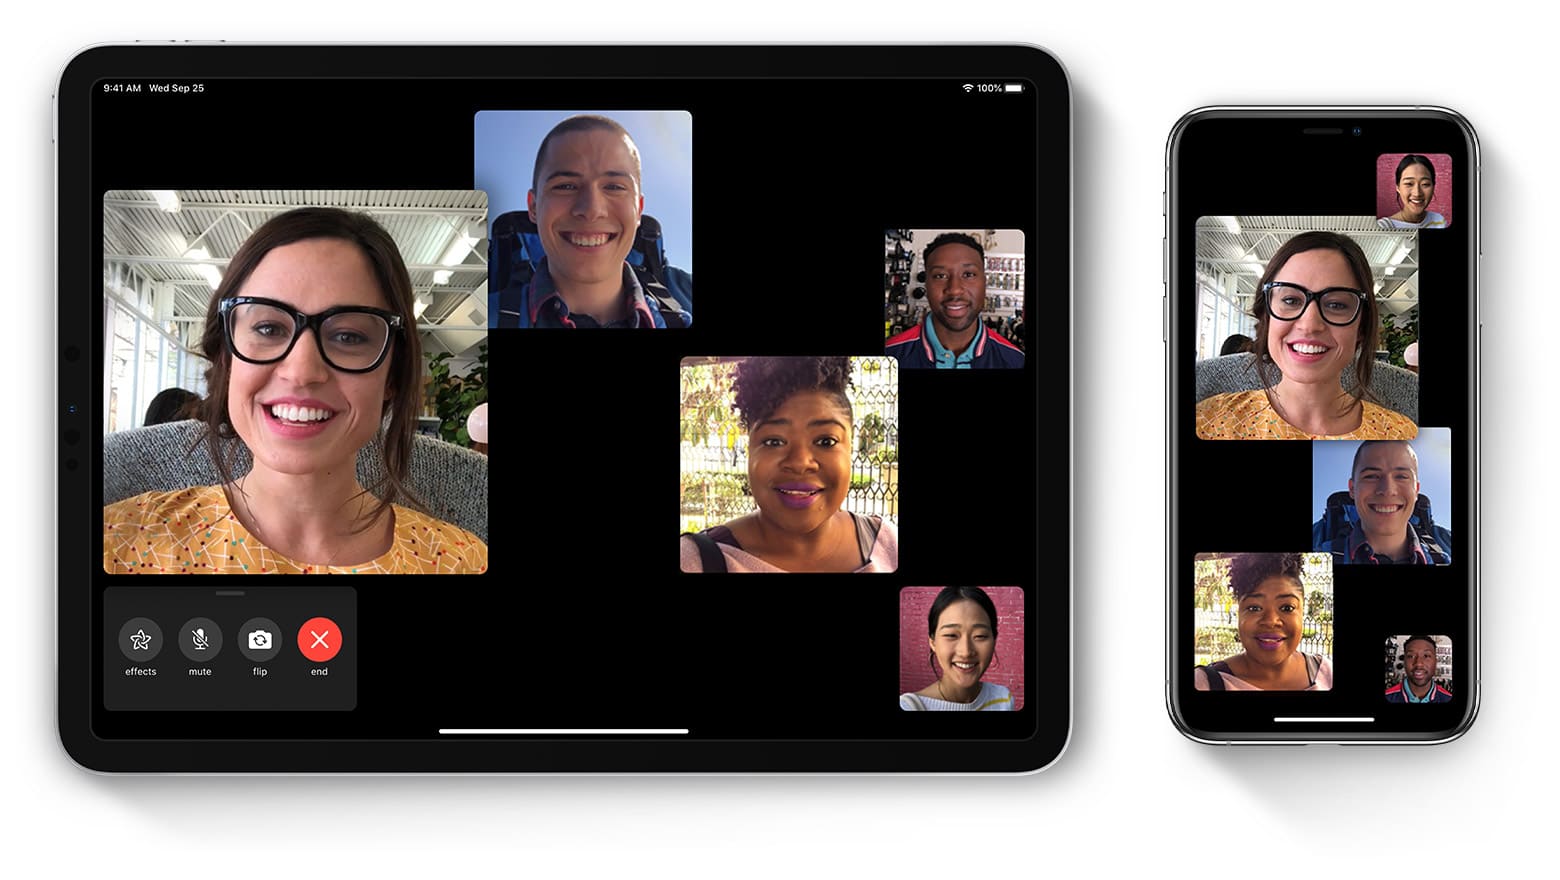 En son iOS güncellemesi, eski iPhone ve iPad'lerde Facetime problemi yaratıyor